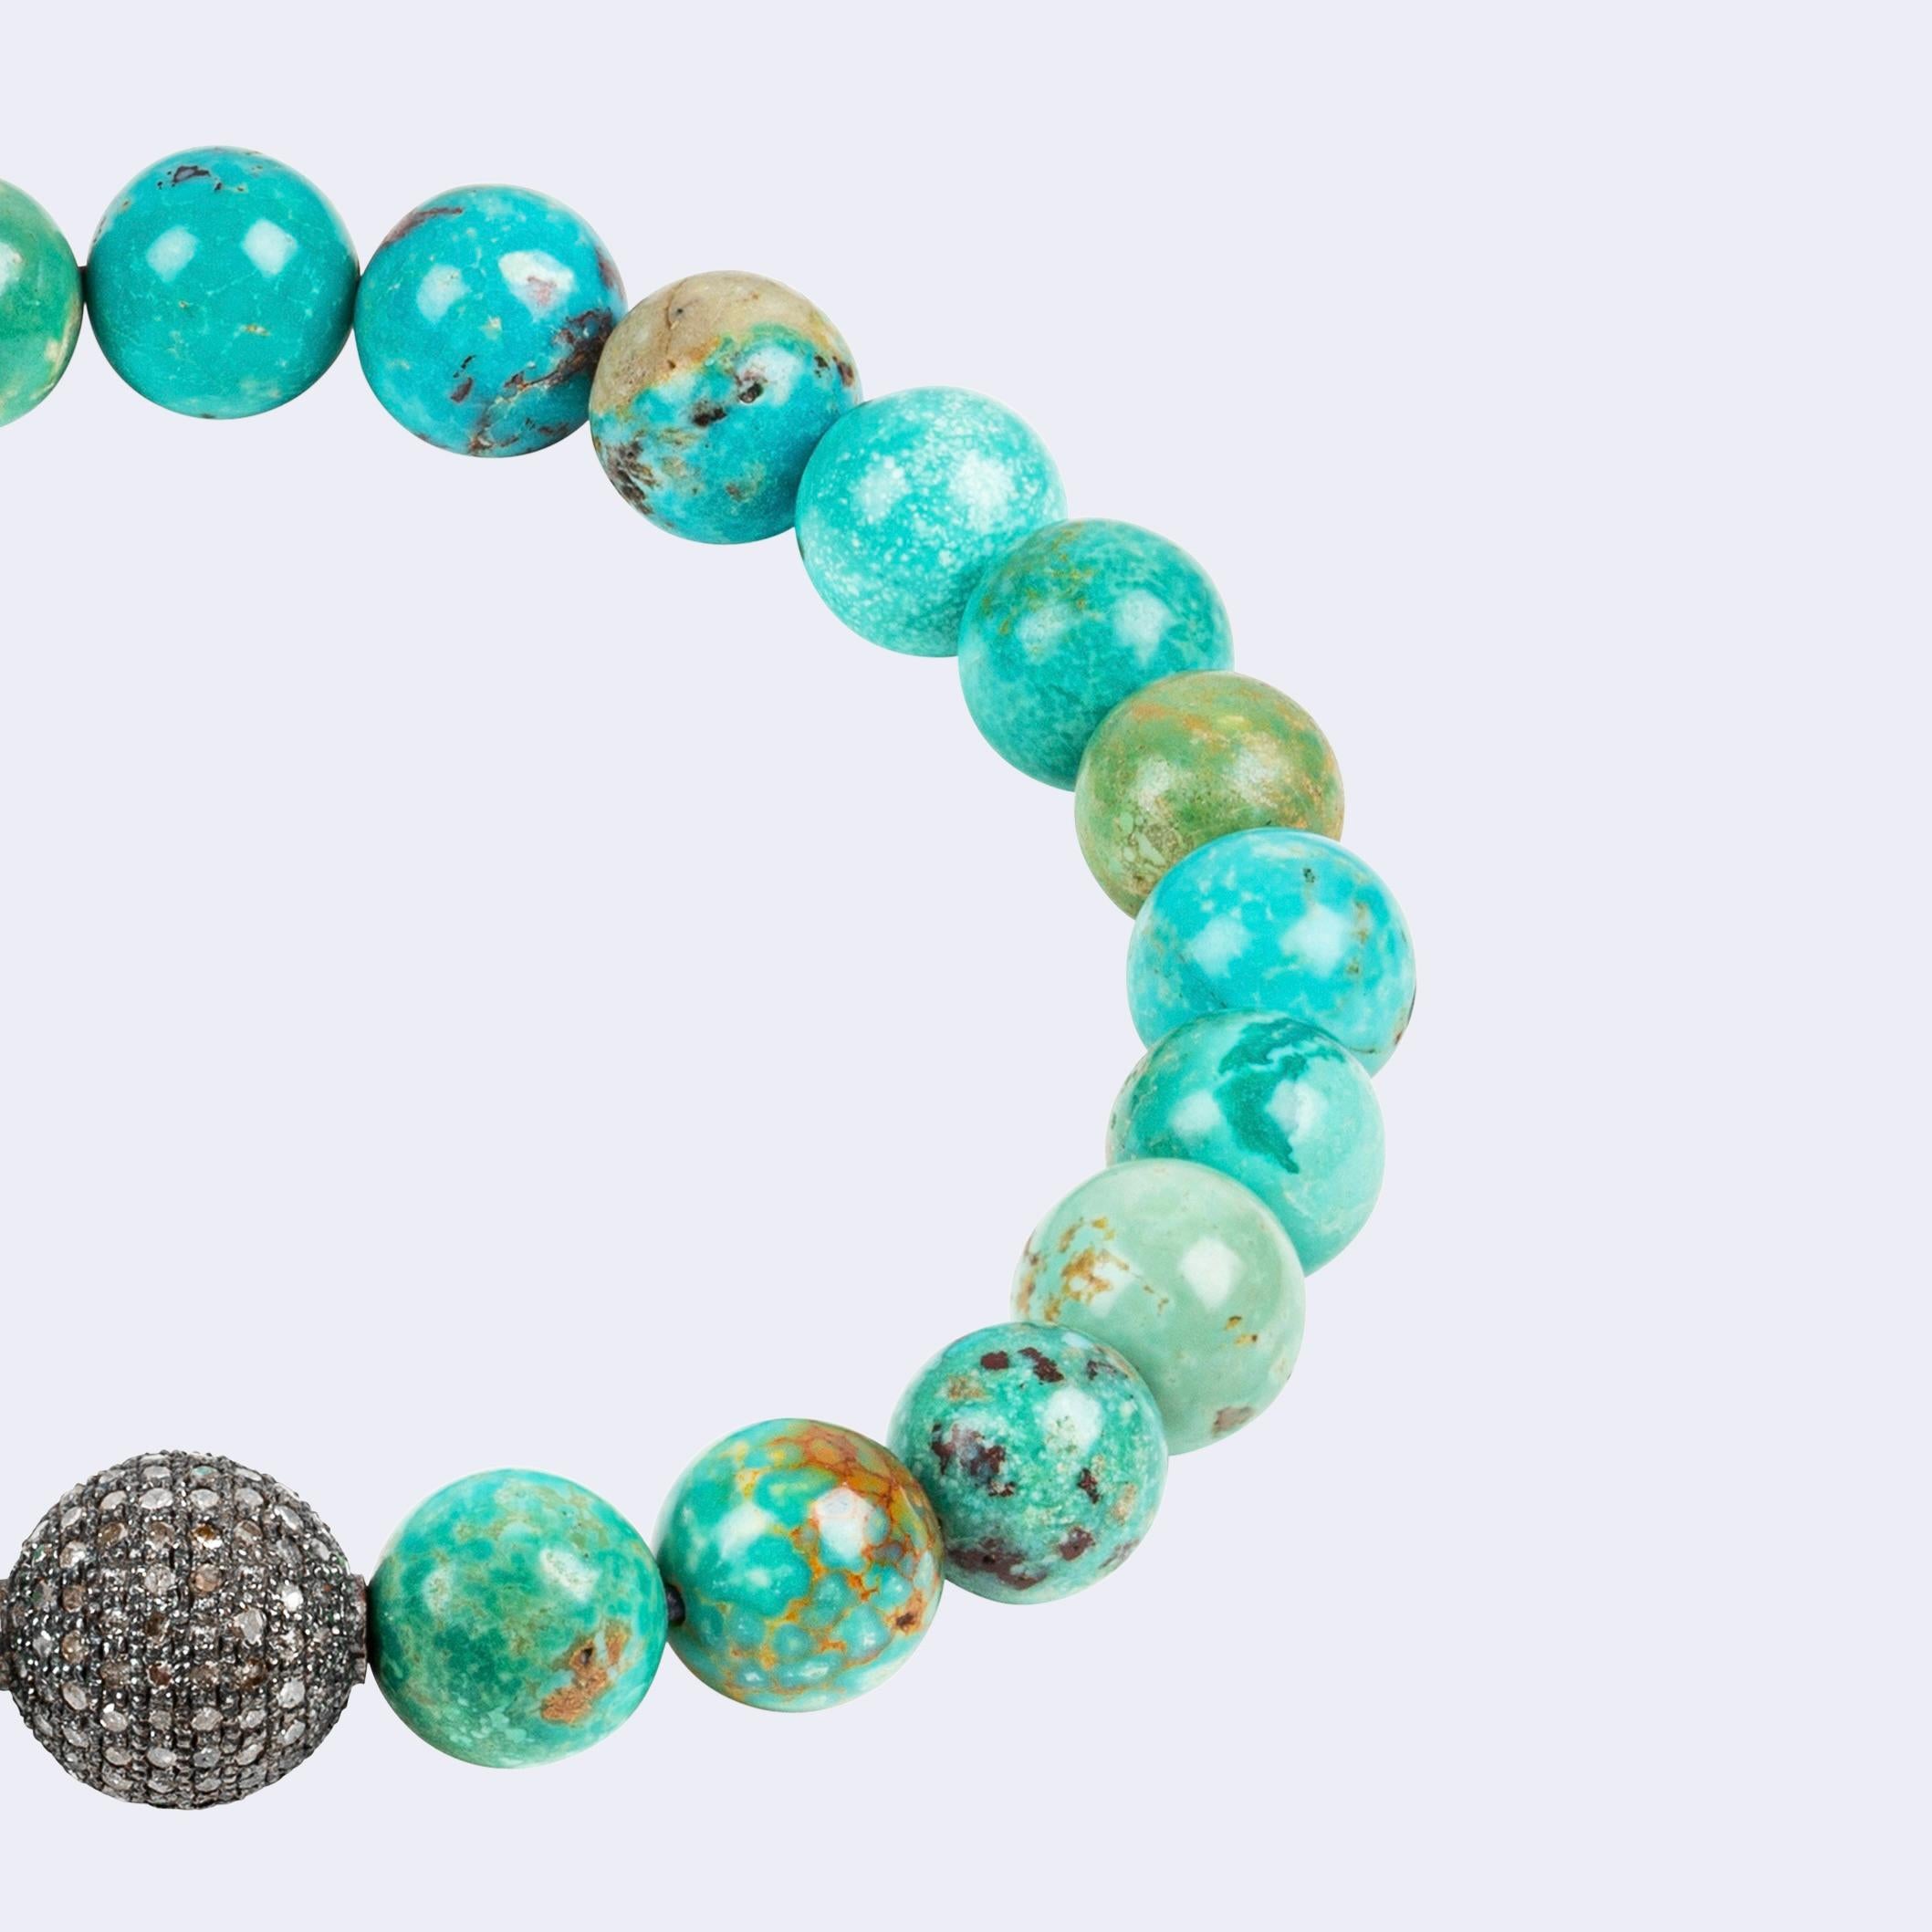 Ce bracelet est composé de magnifiques perles de turquoise naturelle de l'Arizona et d'une perle en argent sterling plaqué rhodium noir, incrustée de diamants pavés argentés et bruns
Naturel signifie que les pierres ont leur couleur naturelle et